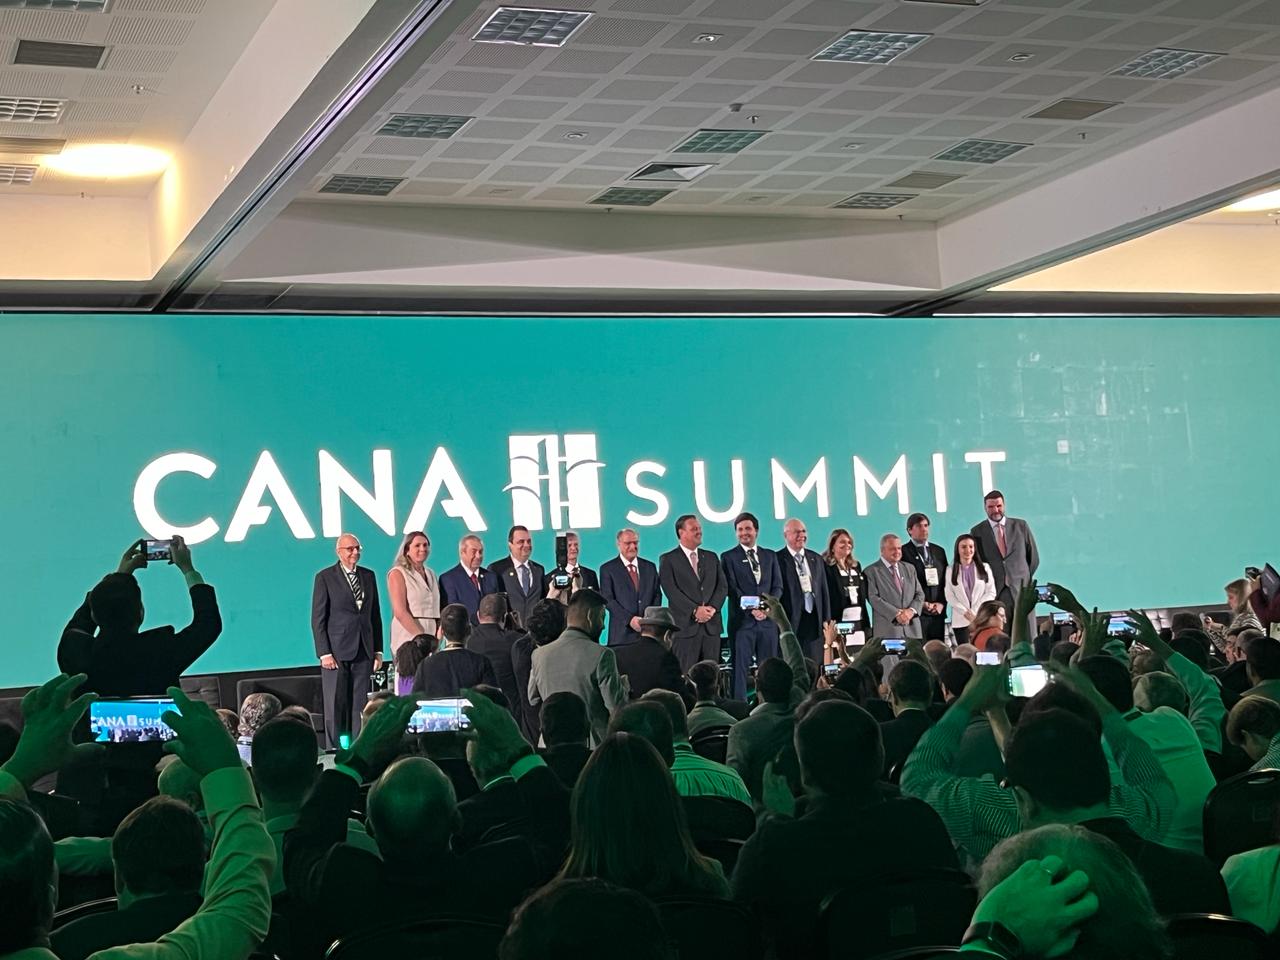 Cana Summit reforça importância do associativismo em apresentação de raio-x do produtor